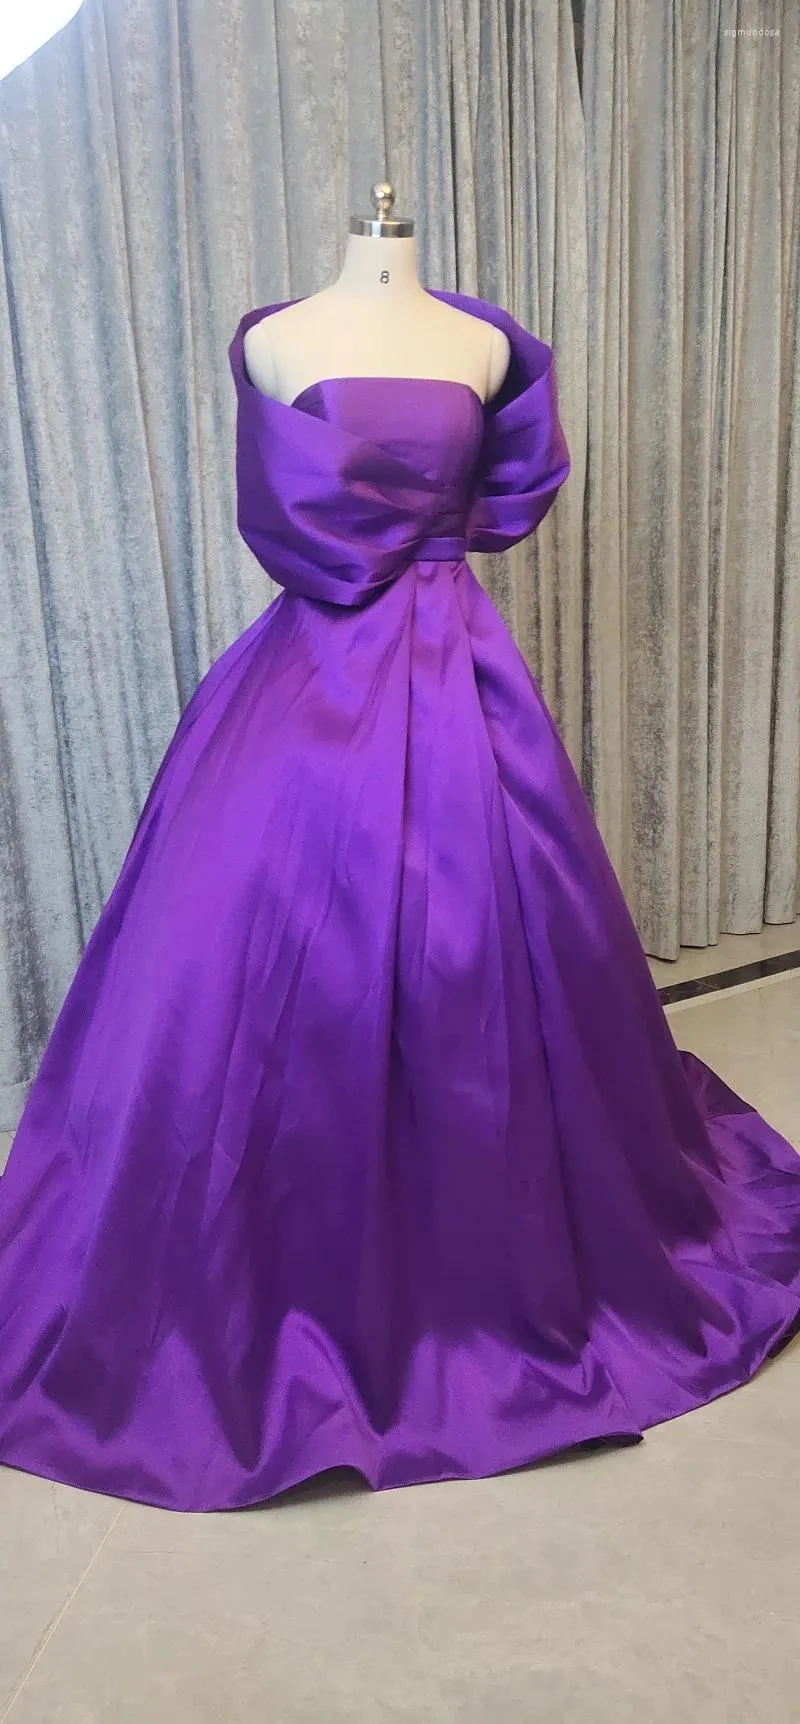 Party Dresses Off The Shoulder Portrait Wraps Korean Satin Evening Luxurious Purple Elegant Gown